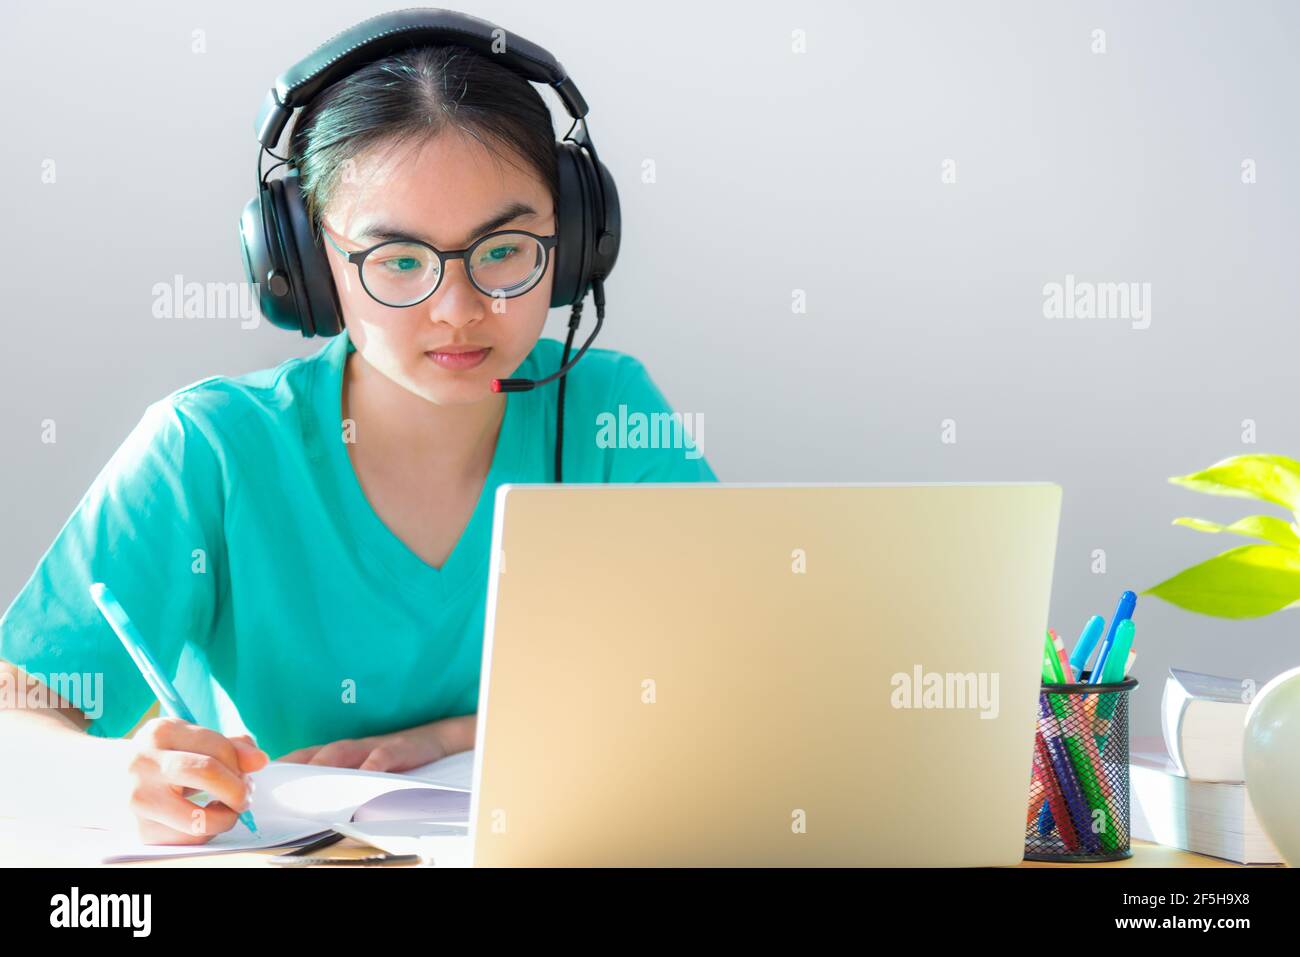 Asiatische junge Frau Student mit Brille Kopfhörer Studie ernst schreiben Anmerkung zu einer buchaussehenden Videokonferenz auf einem Laptop-Computer universitätsklasse ein Stockfoto